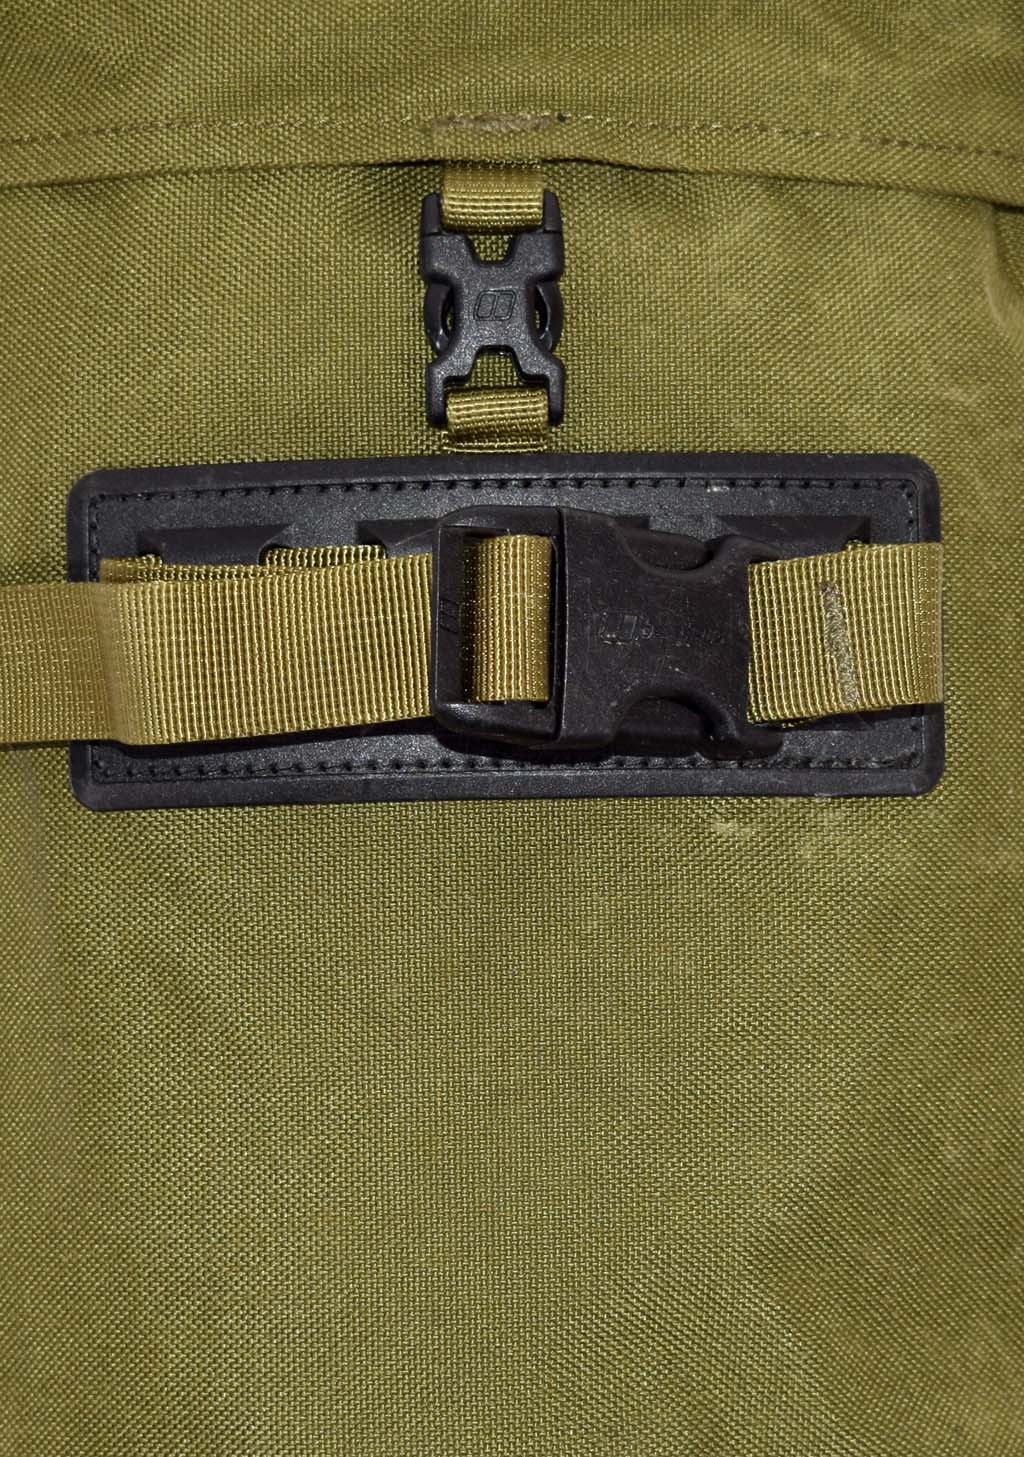 Подсумок-карман боковой на рюкзак olive б/у Голландия